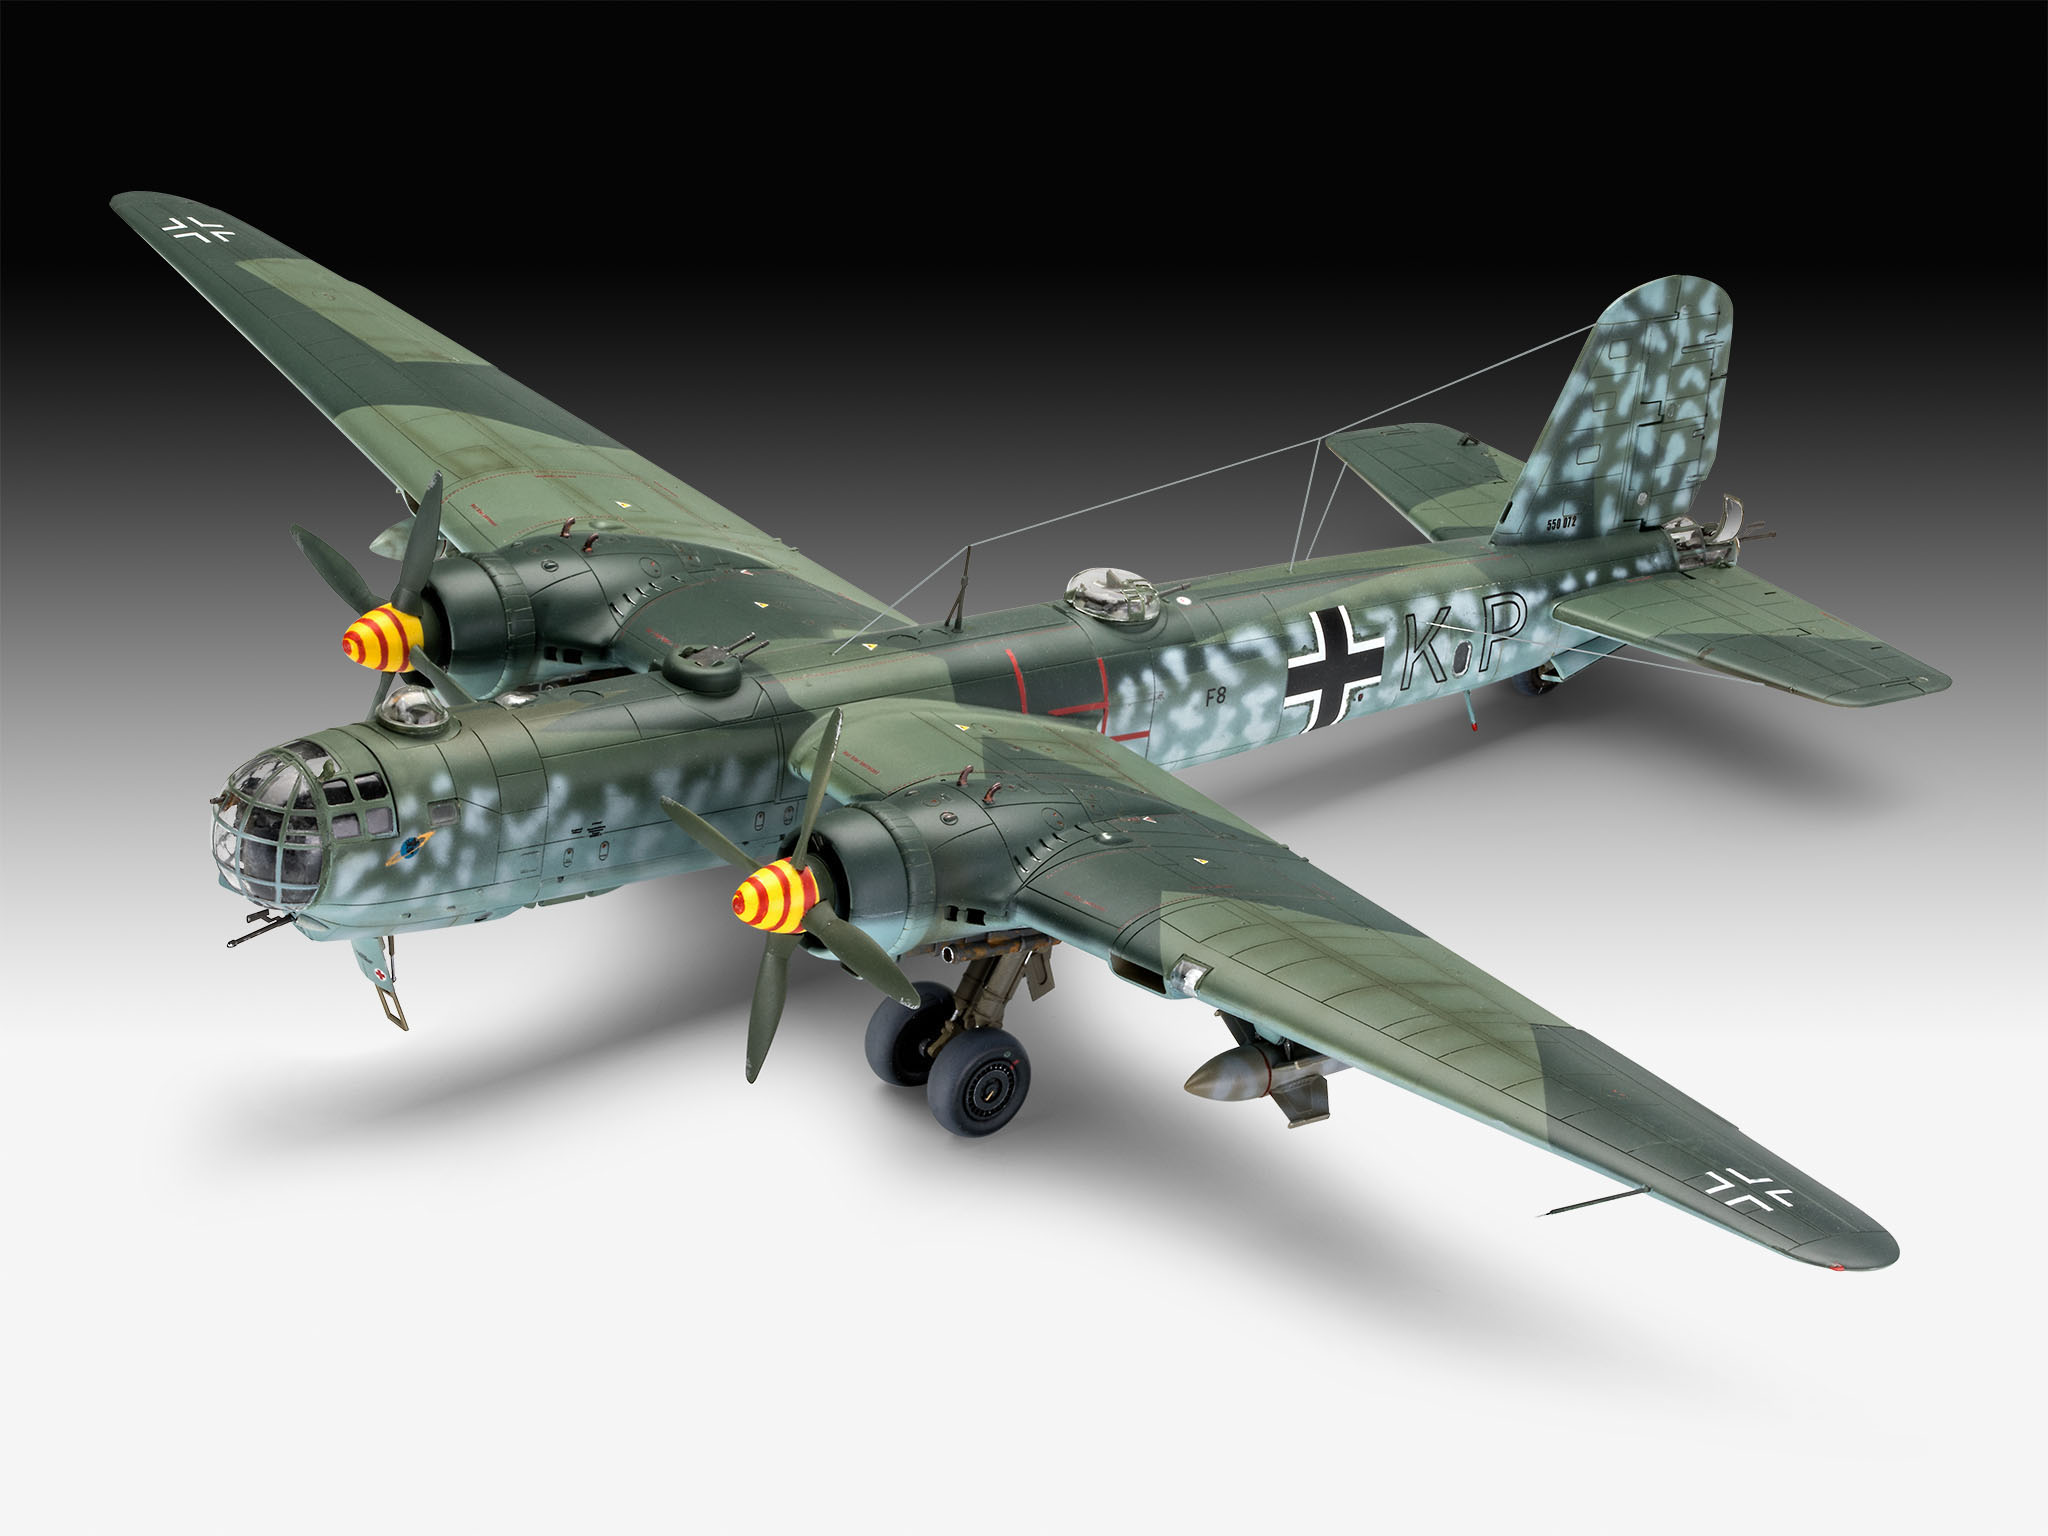 REVELL Heinkel A-5 Mehrfarbig Bausatz, Greif HE177